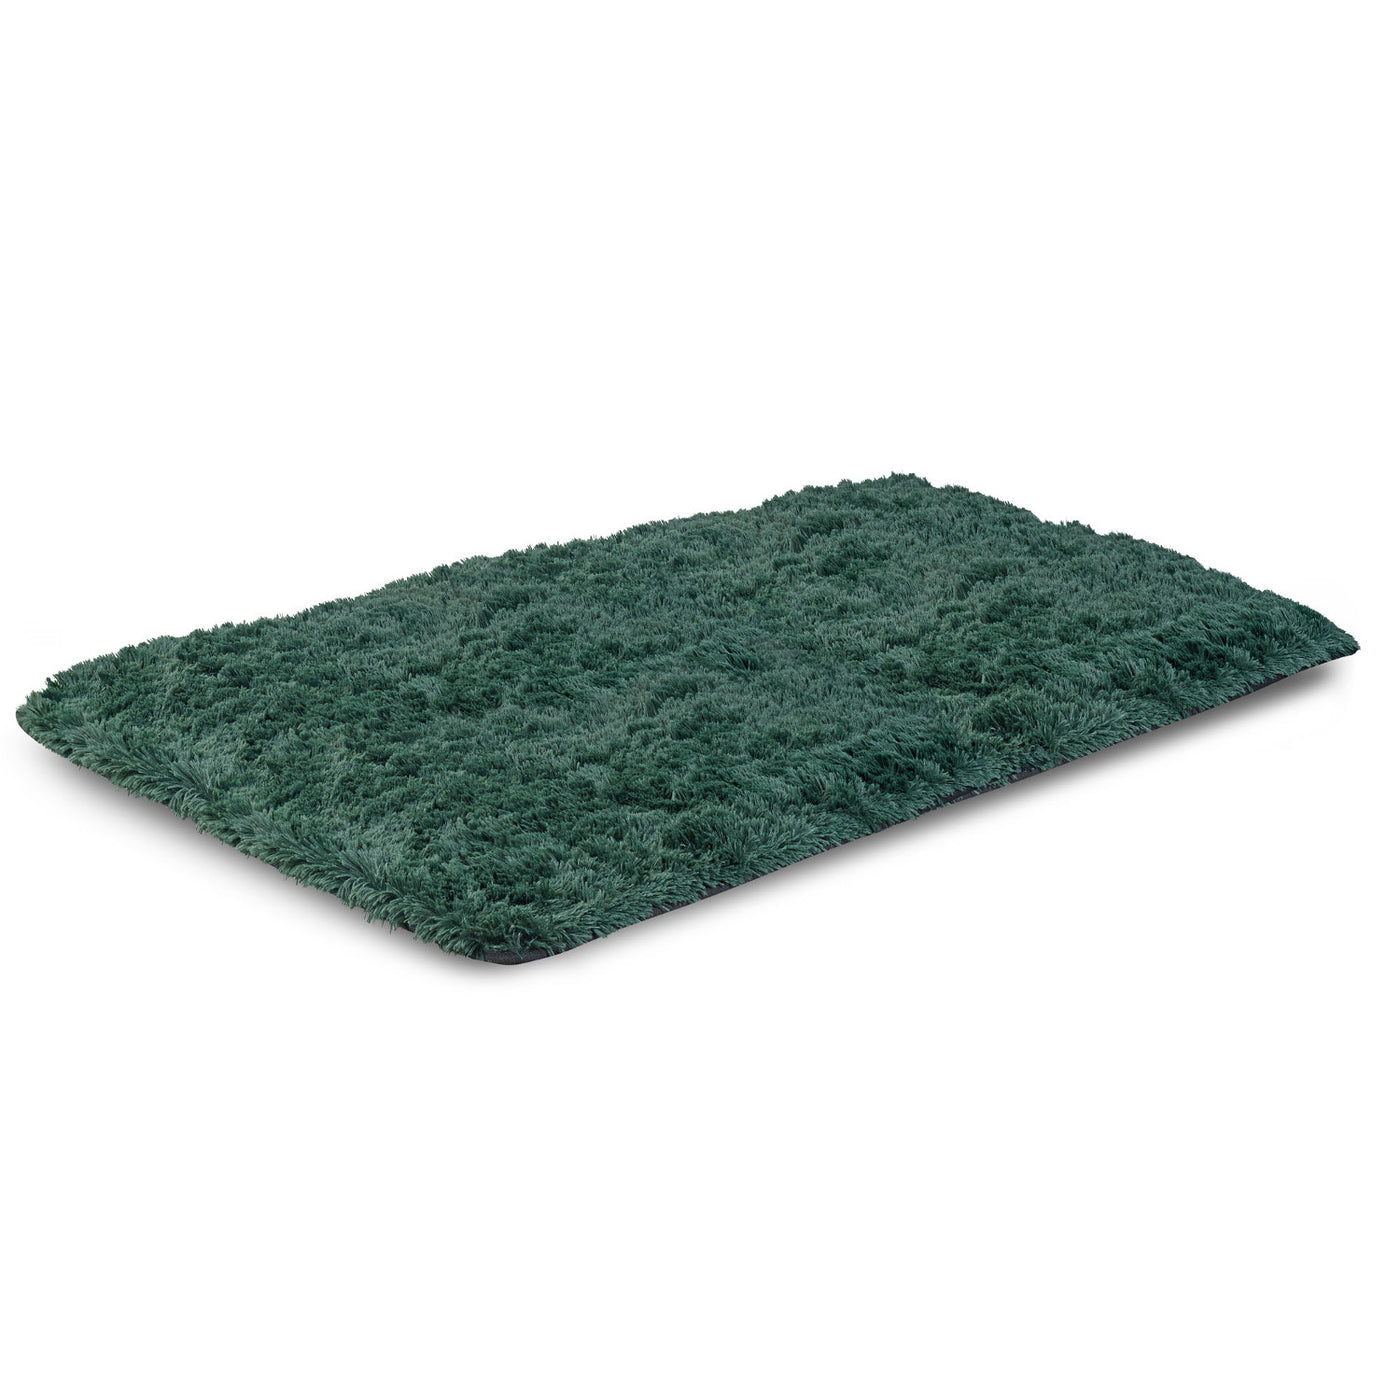 Dywan pluszowy, krótki włos, antypoślizgowy, 160 x 220 cm, zielony, DYWSHA160/220ZIE